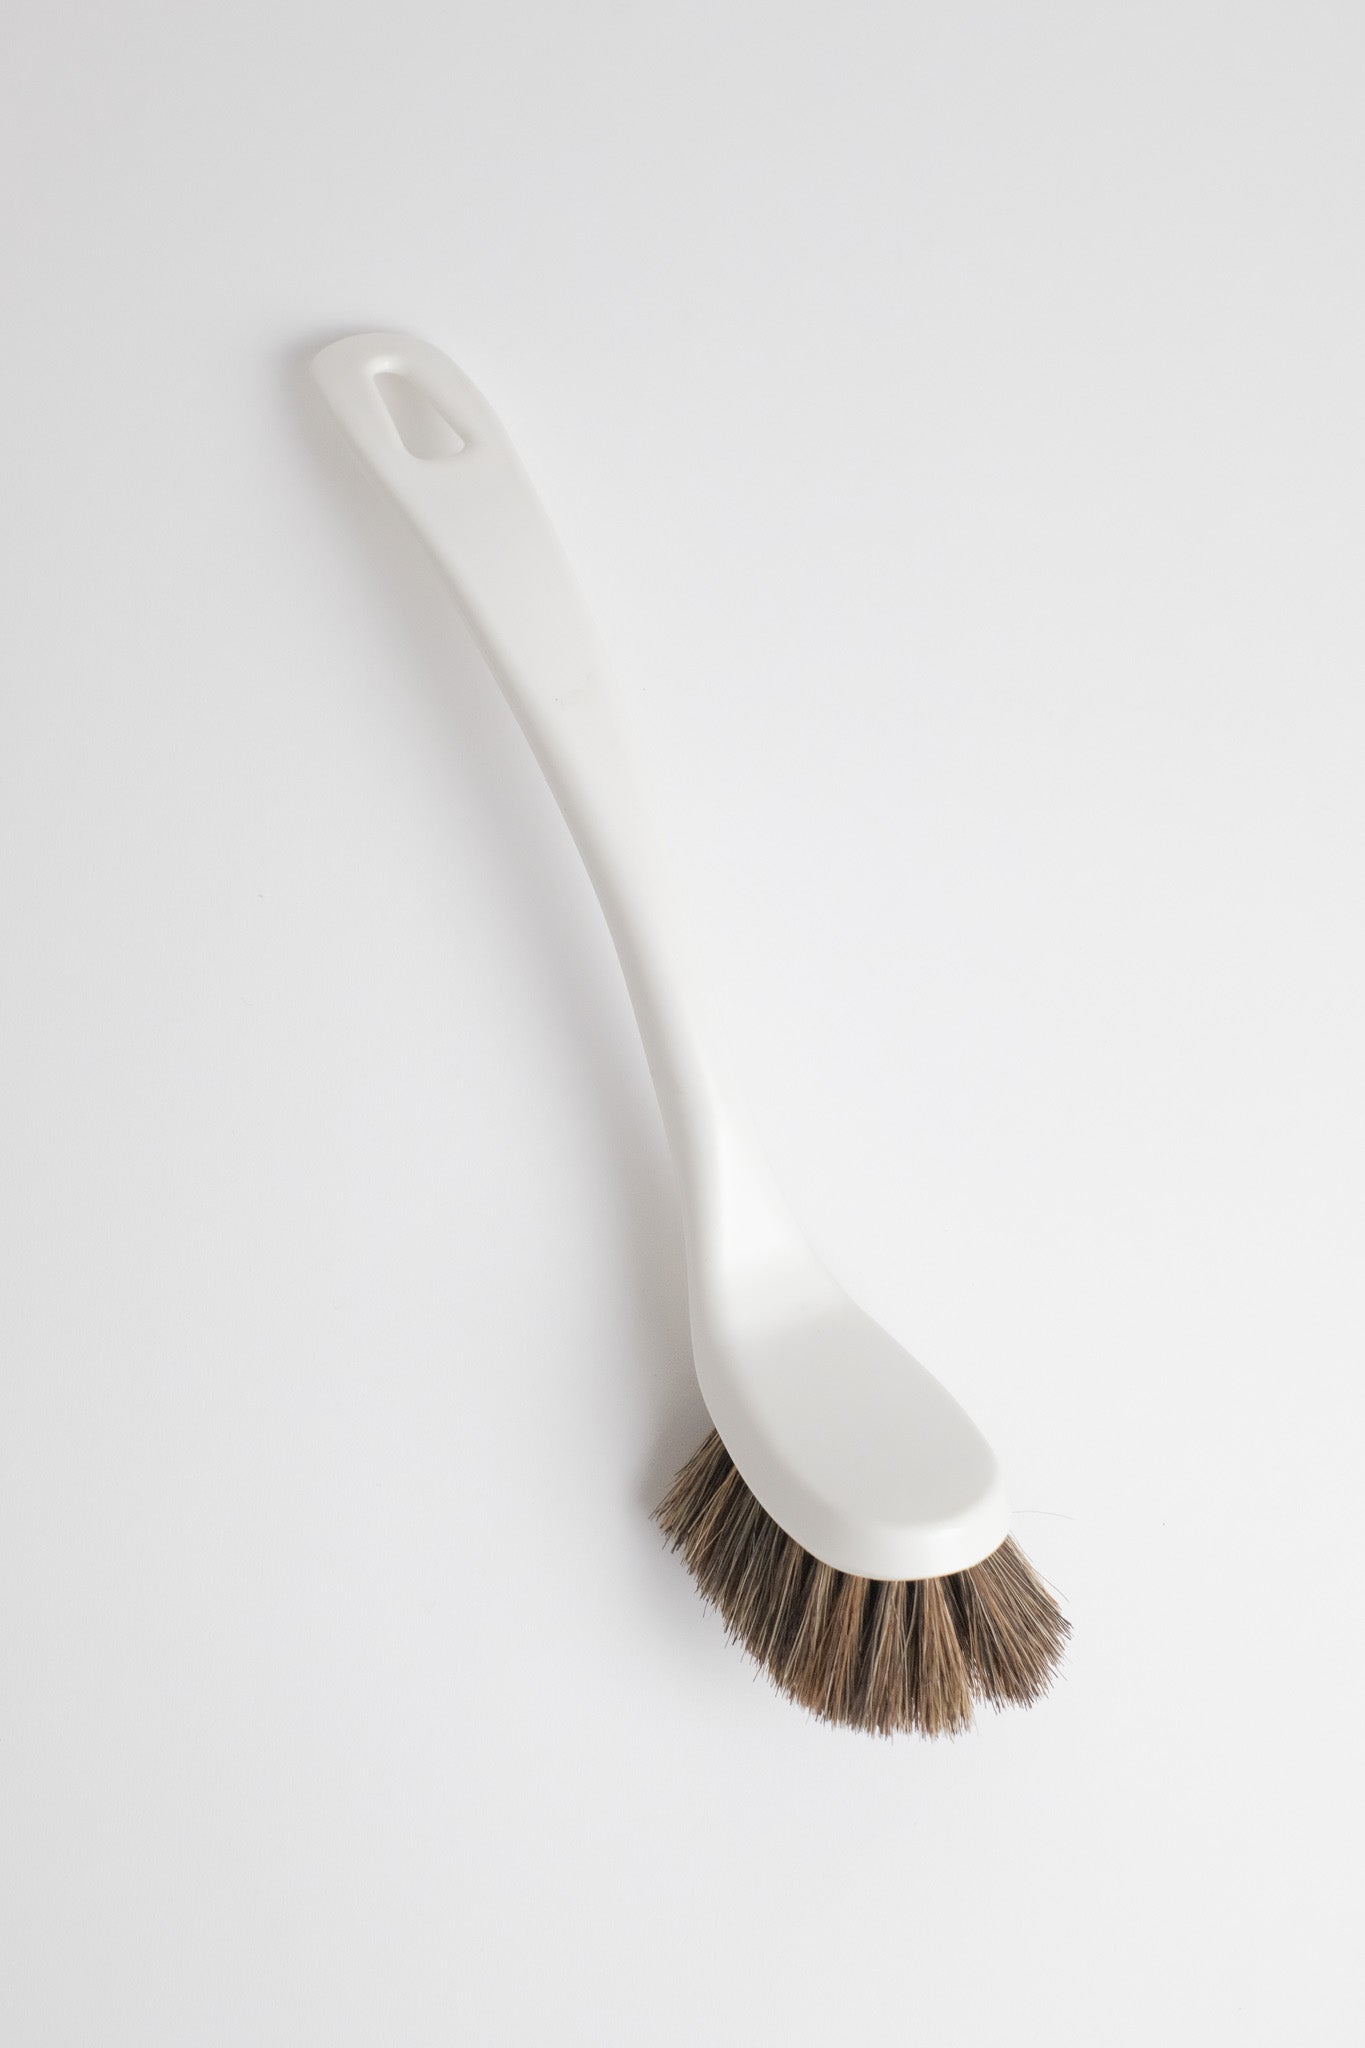 Dishwashing Brush - White